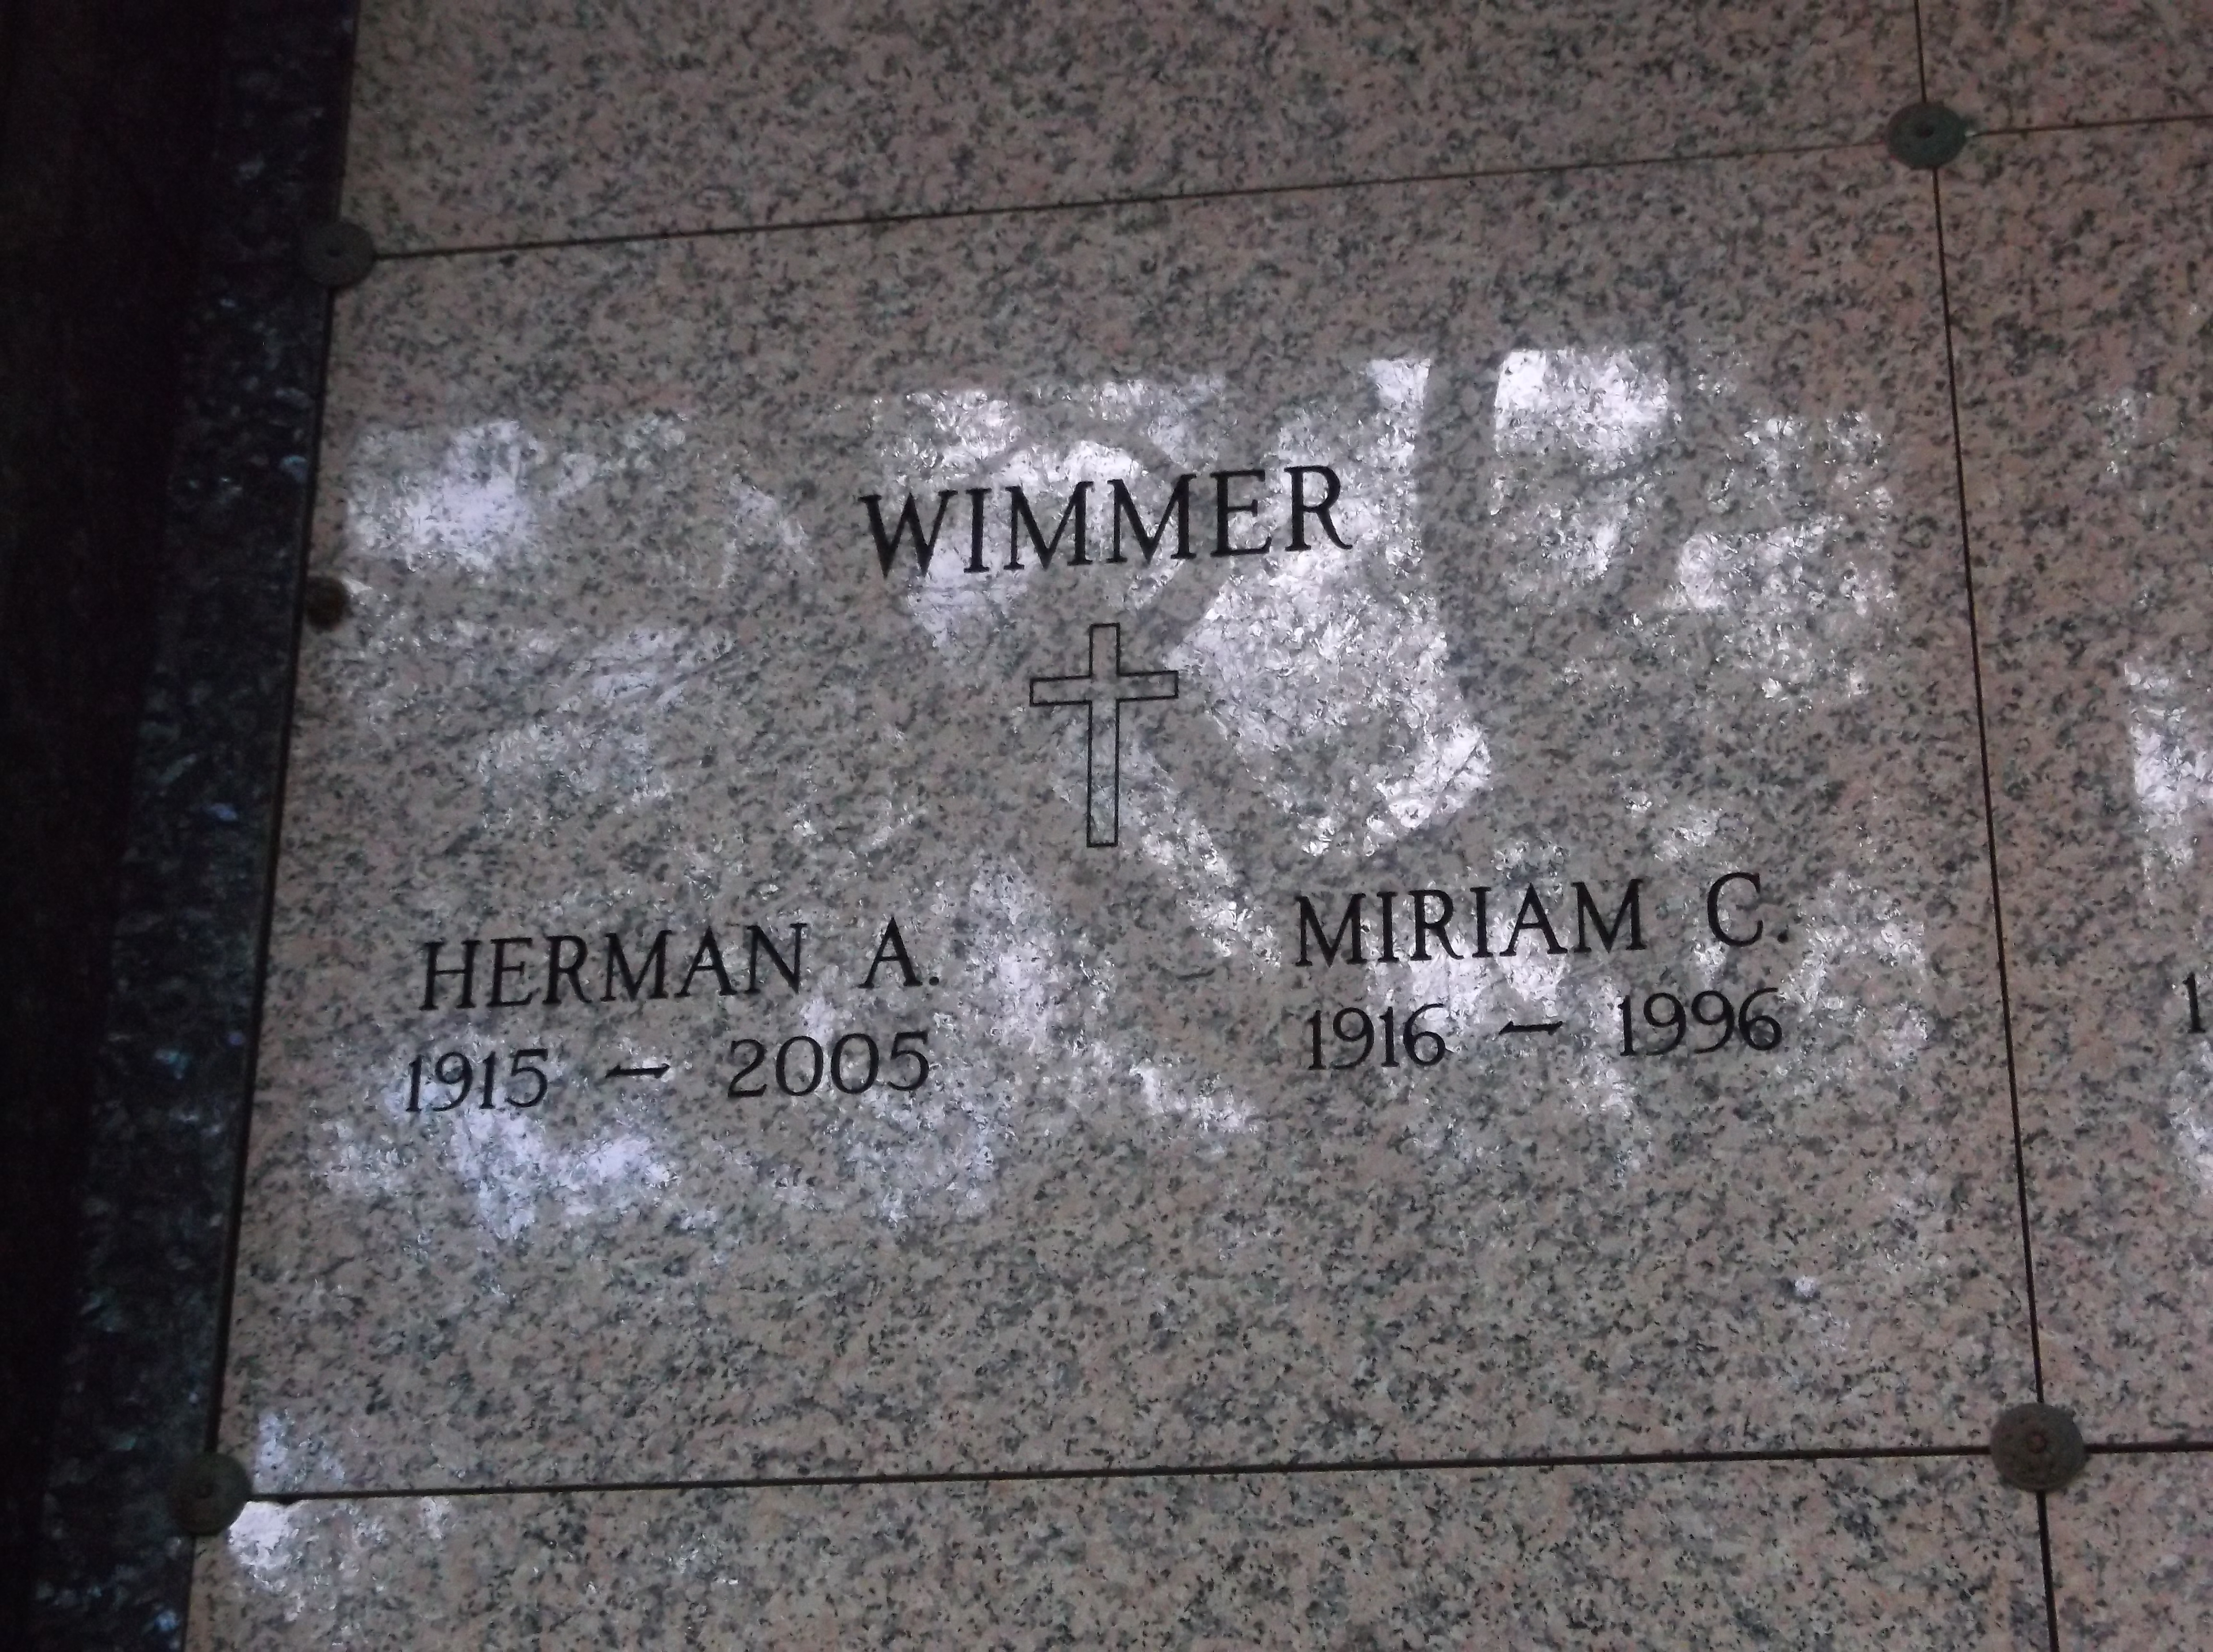 Miriam C Wimmer